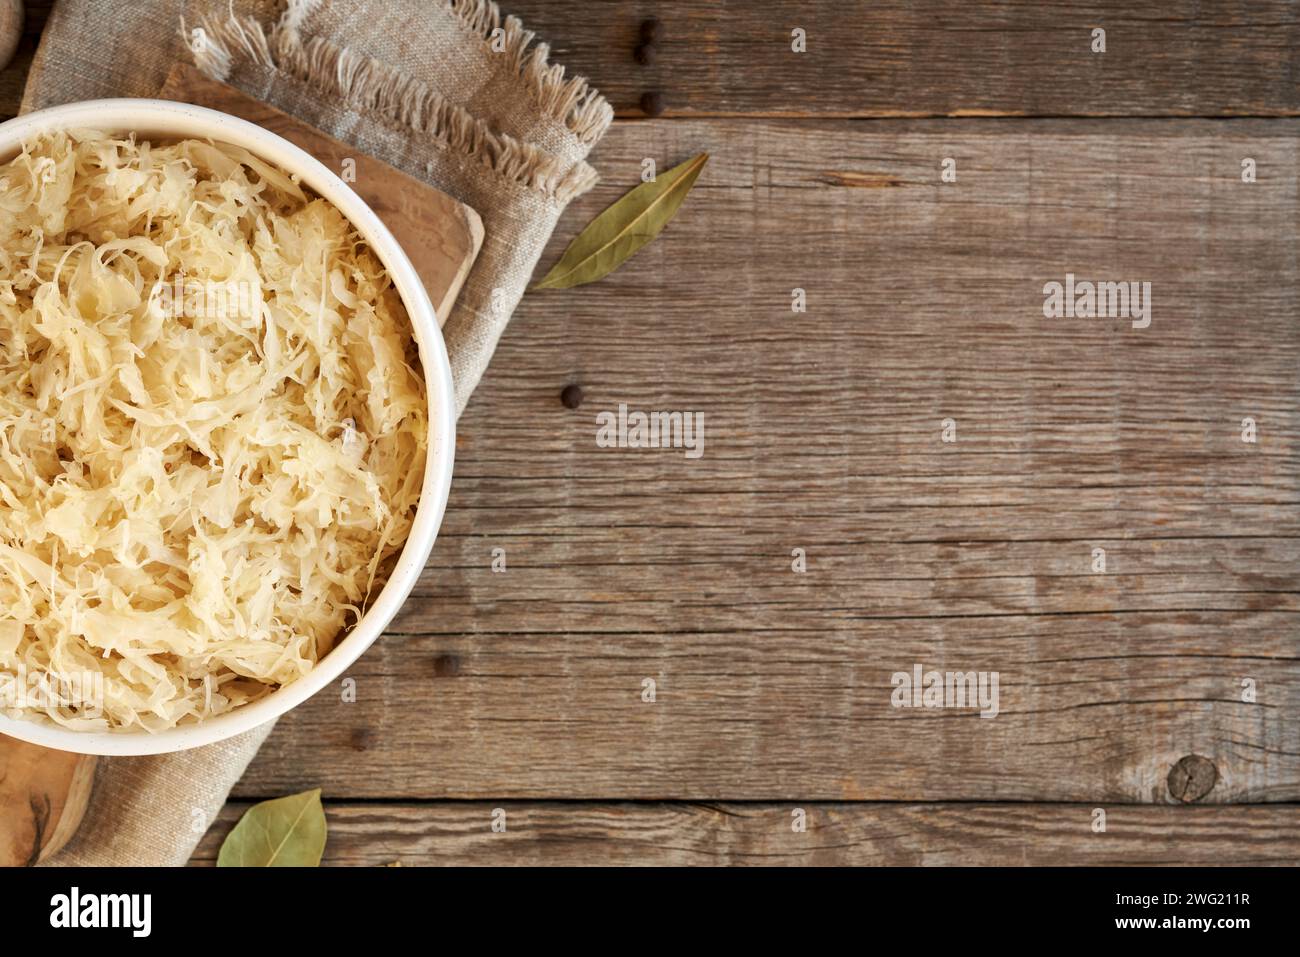 Cavolo fermentato o crauti fatti in casa in una ciotola su sfondo di legno con spazio per copiare, vista dall'alto Foto Stock